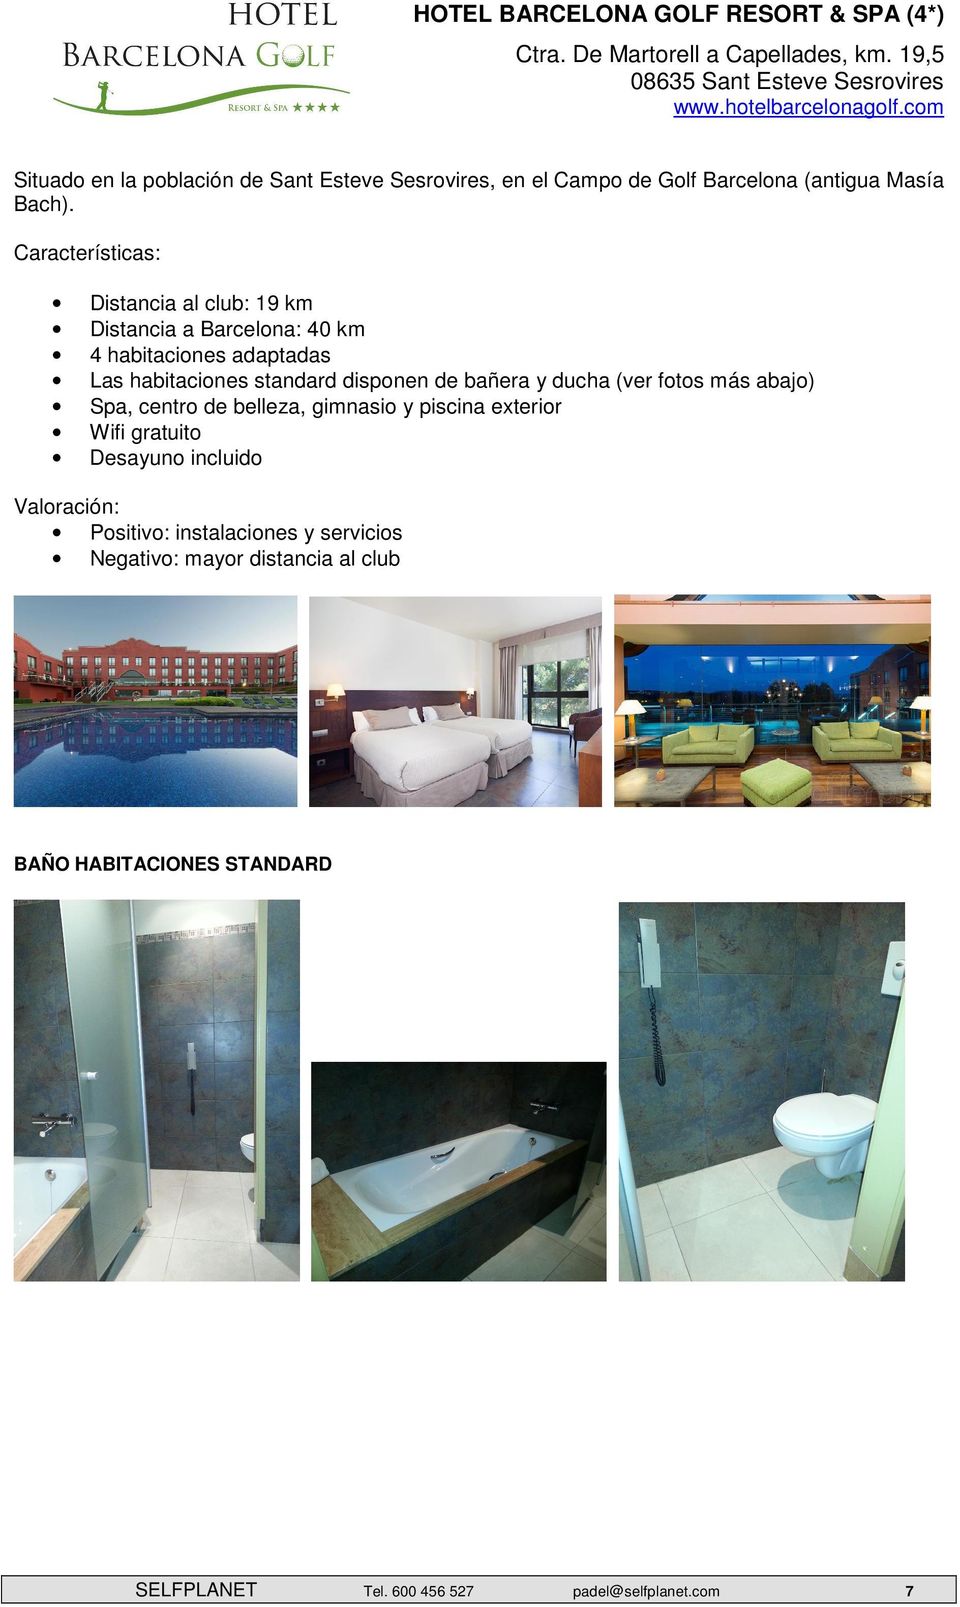 Características: Distancia al club: 19 km Distancia a Barcelona: 40 km 4 habitaciones adaptadas Las habitaciones standard disponen de bañera y ducha (ver fotos más